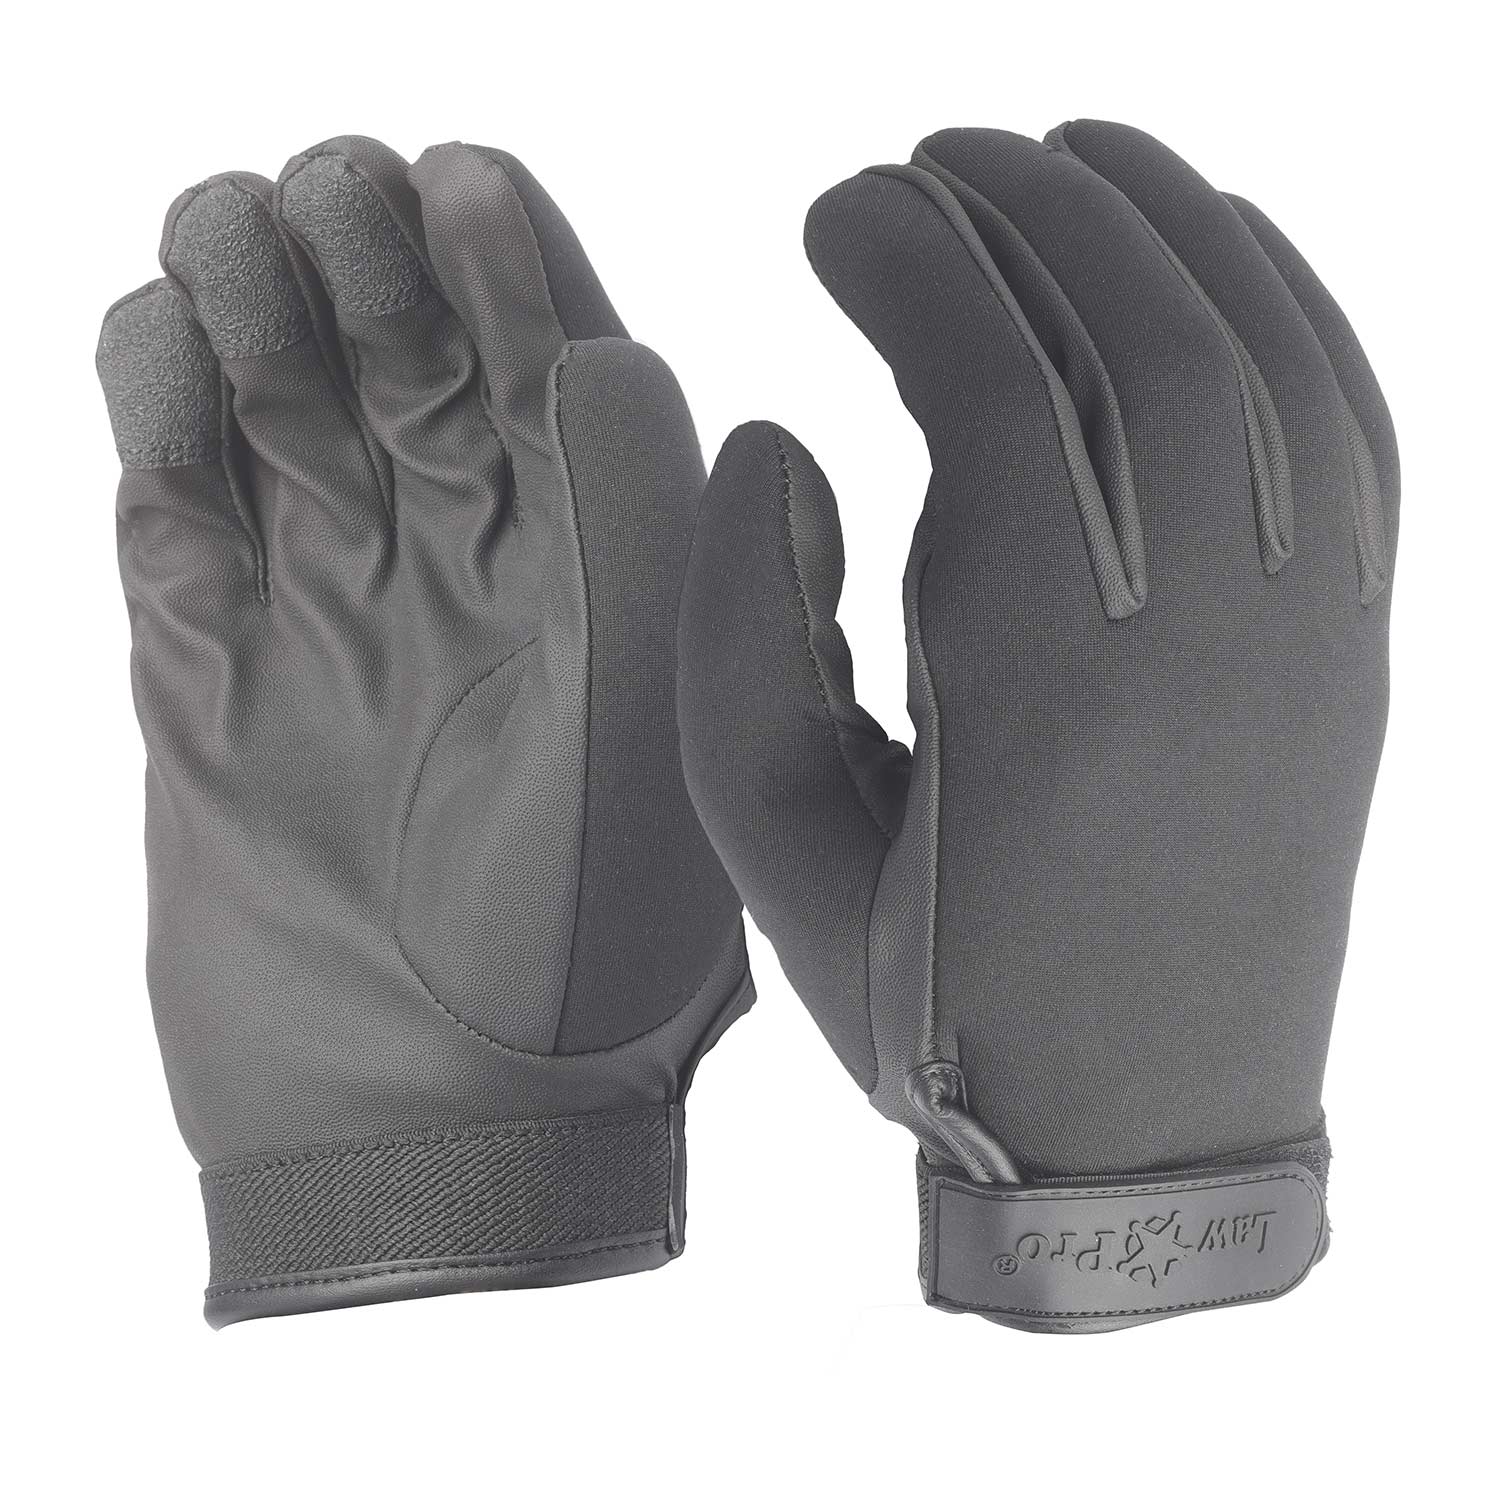 LawPro Waterproof Duty Gloves